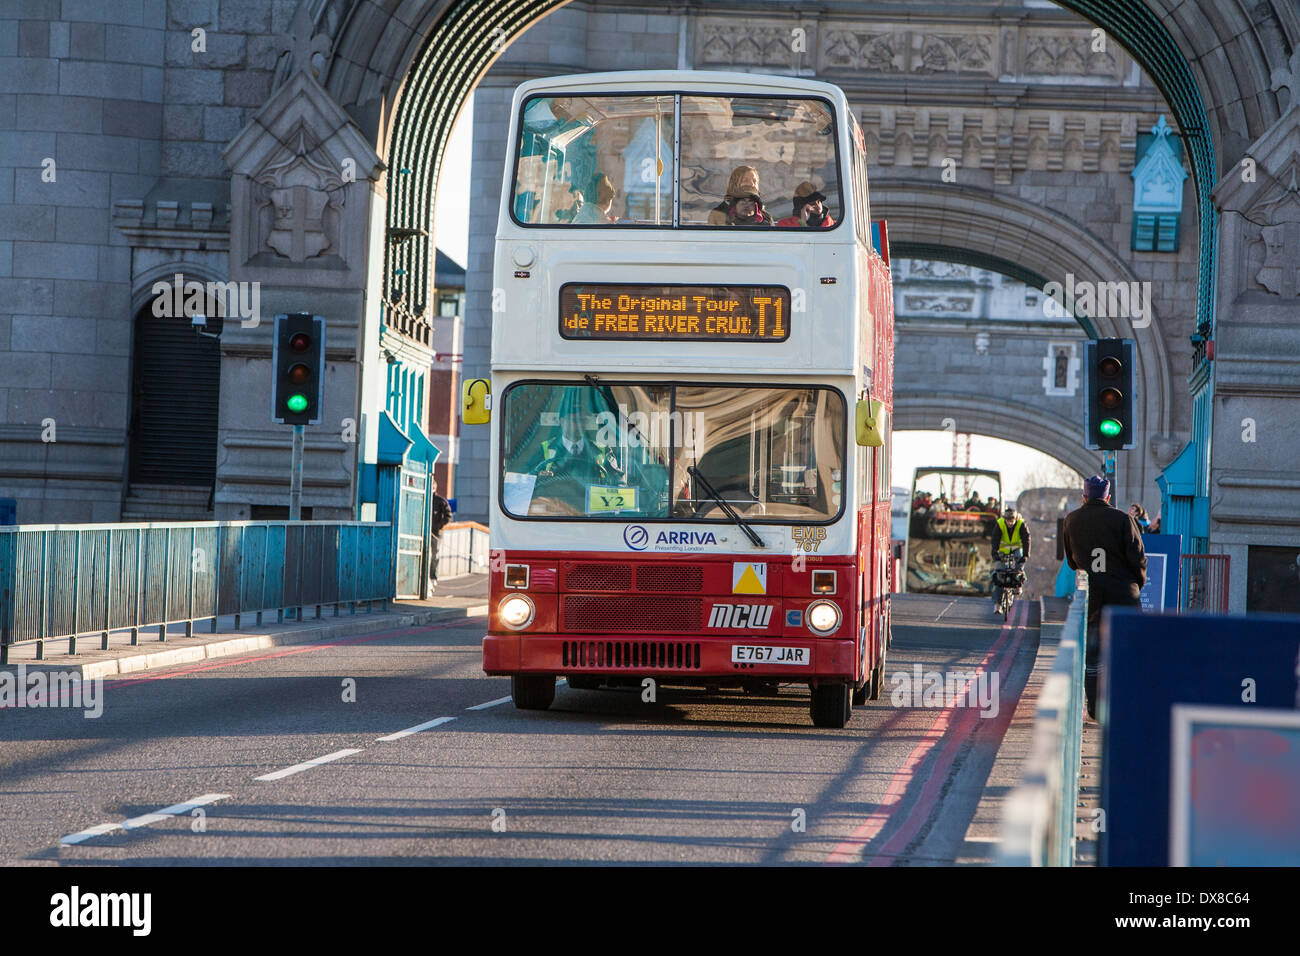 London double decker tourist bus. Stock Photo